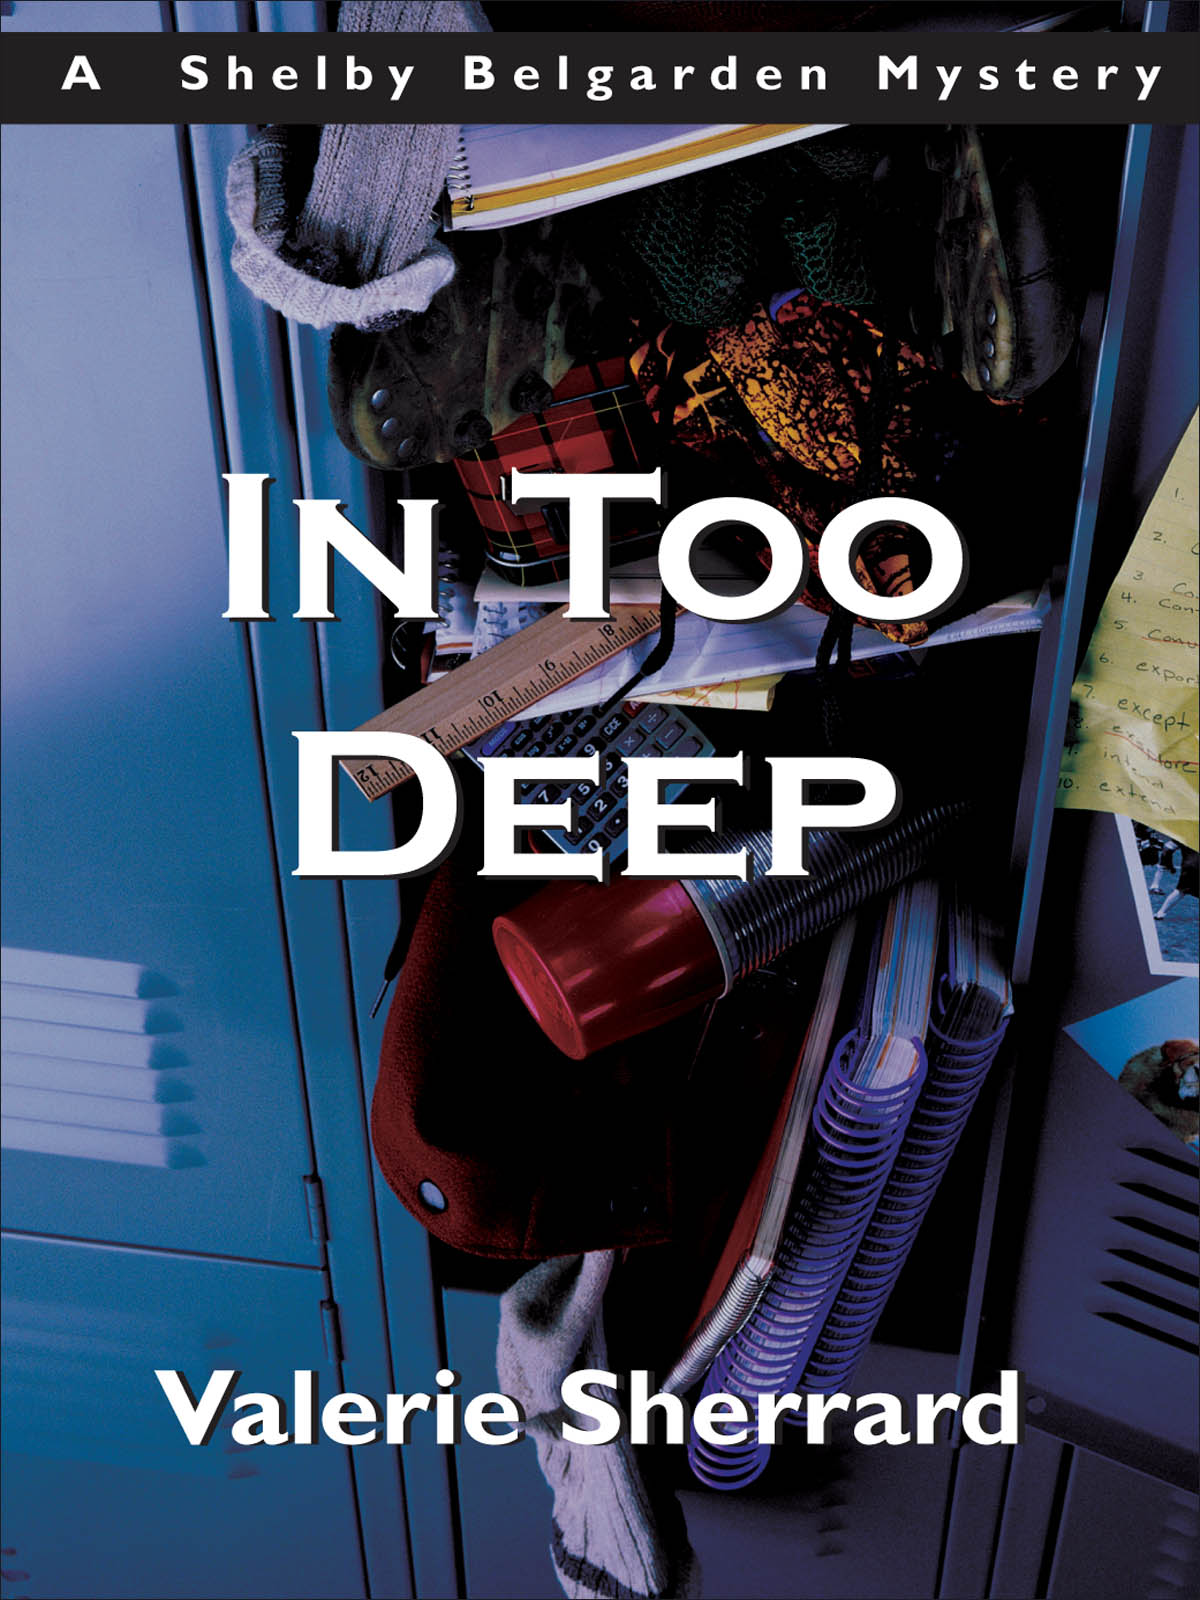 In Too Deep (2003) by Valerie Sherrard